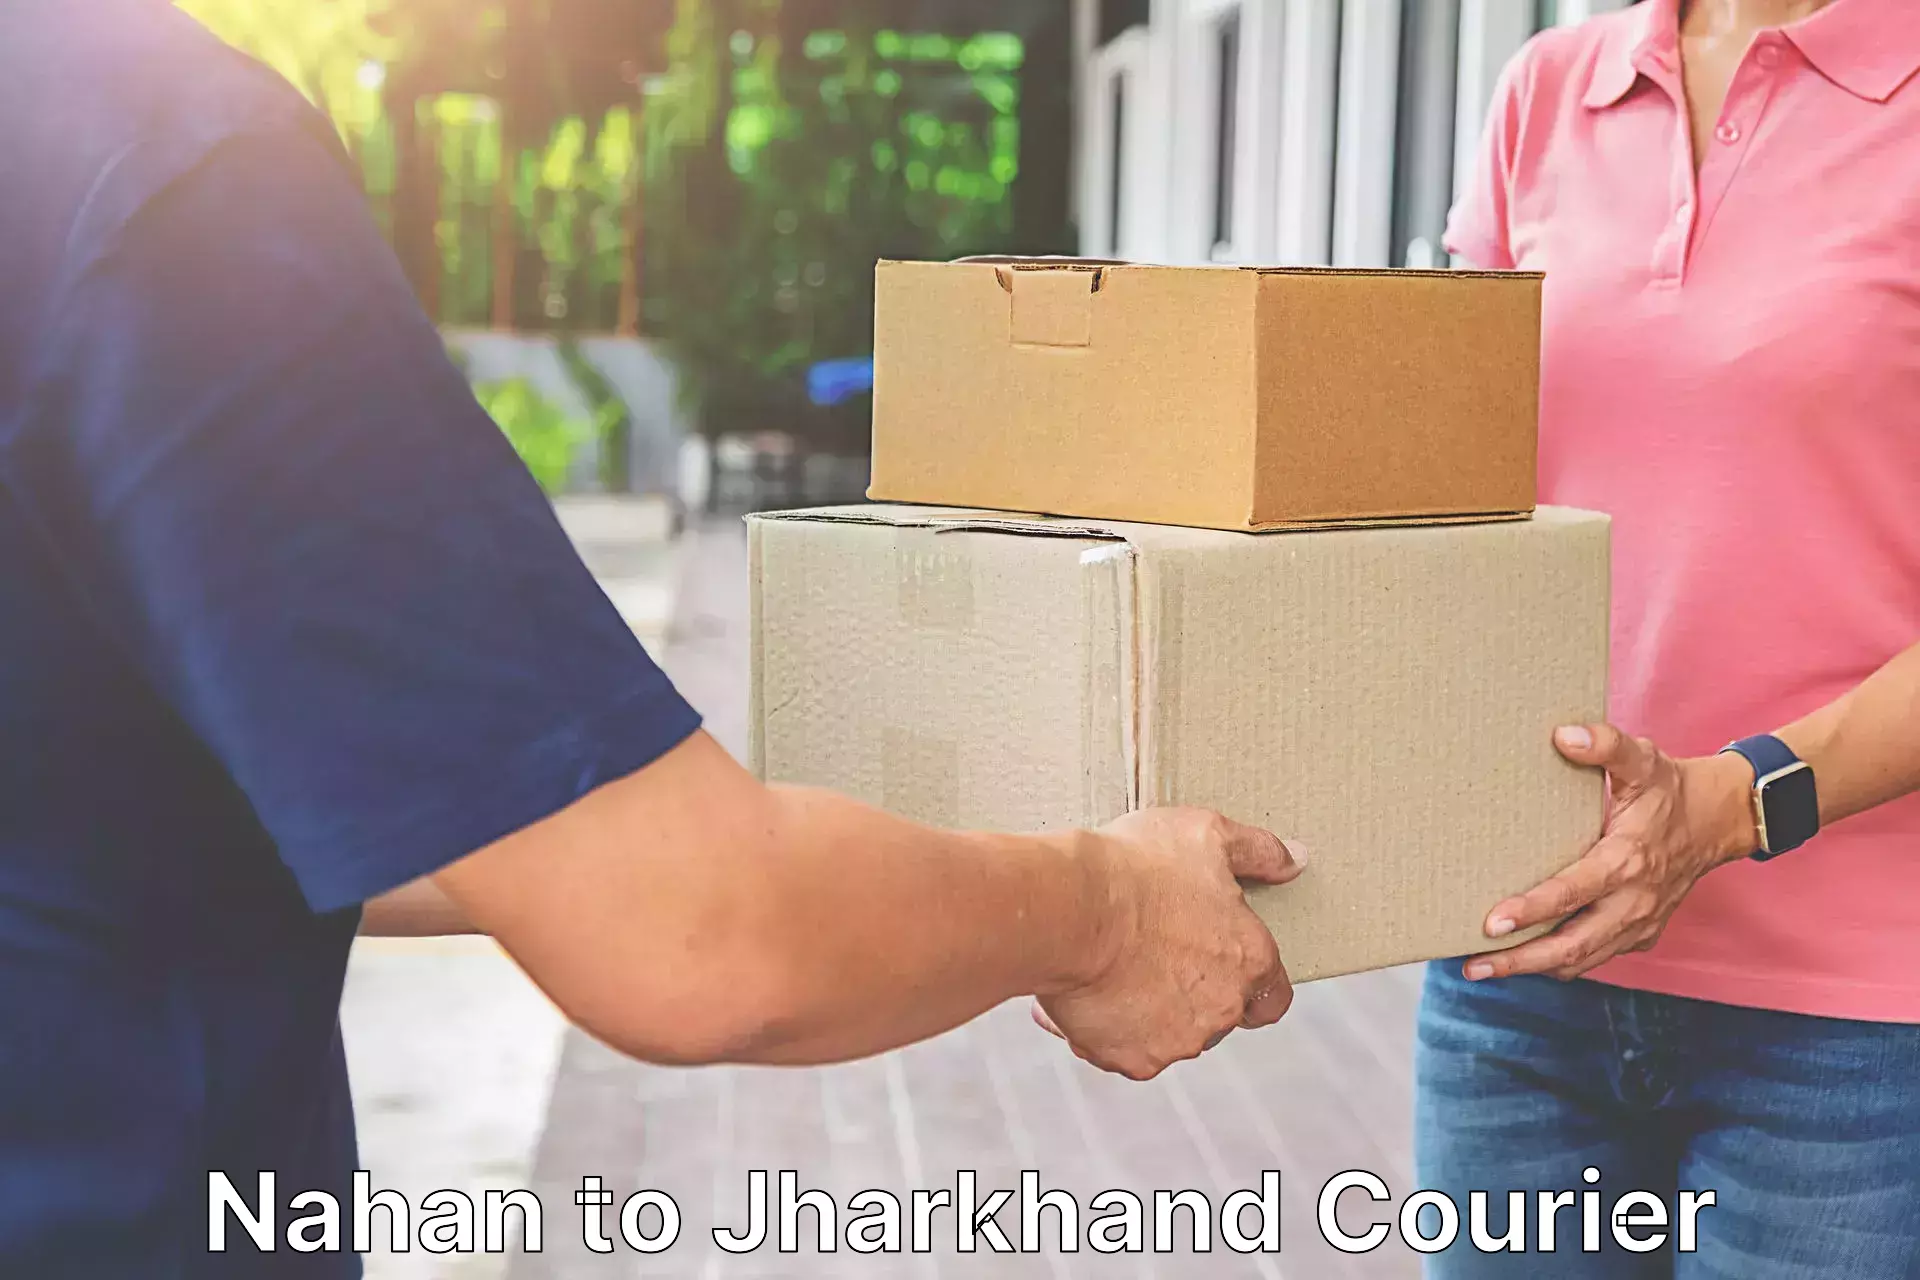 Professional courier handling Nahan to Govindpur